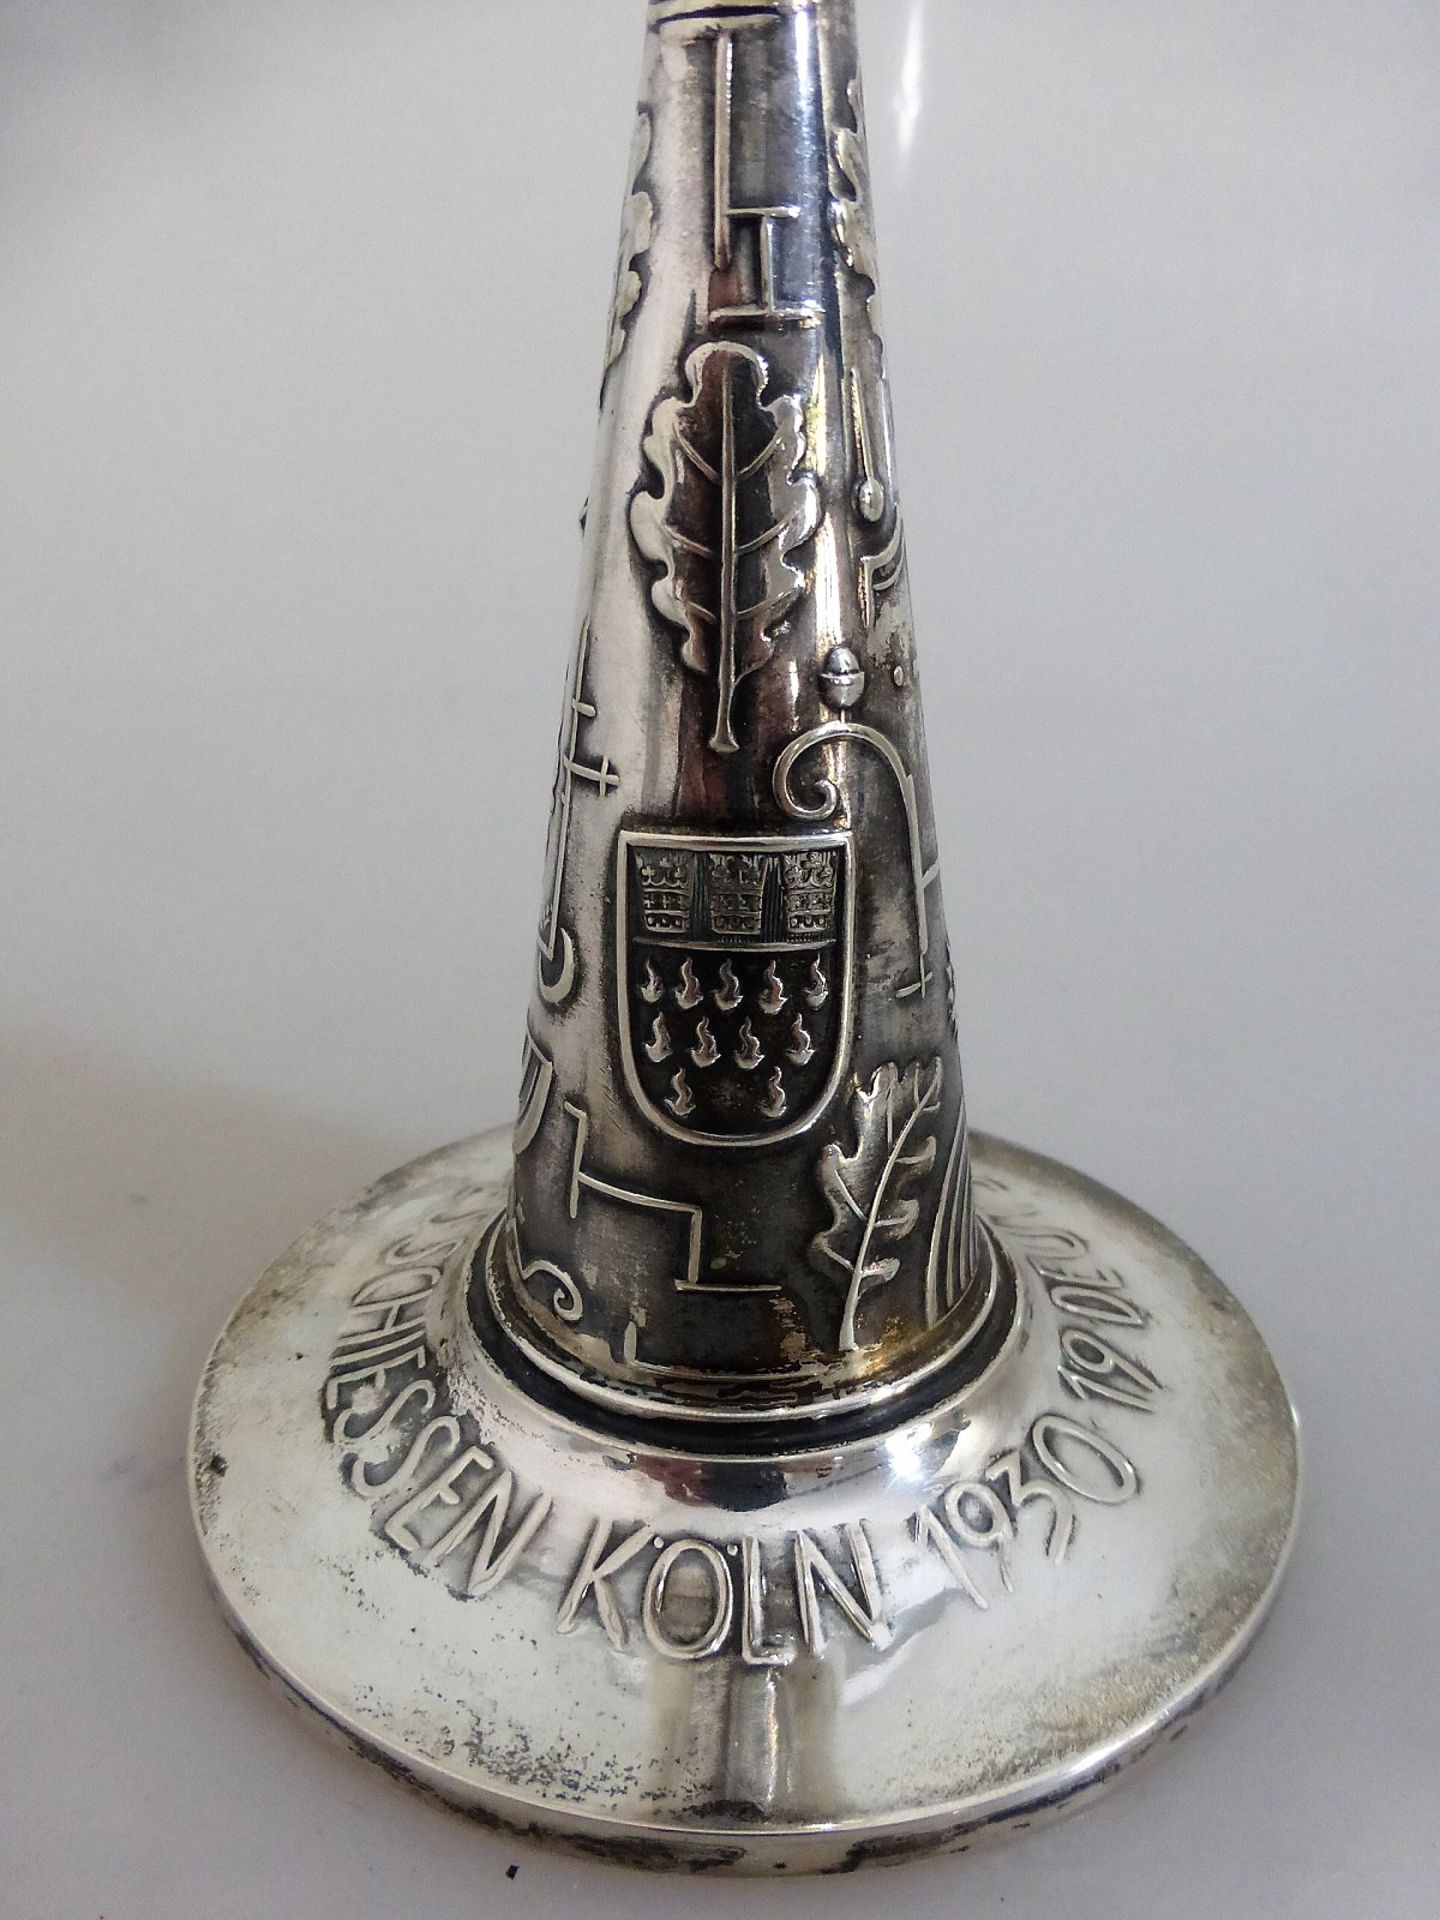 Ehren Pokal zum 19. Deutsches Bundesschießen Köln 1930, Silber 800, Hersteller Bruckmann & - Bild 2 aus 2